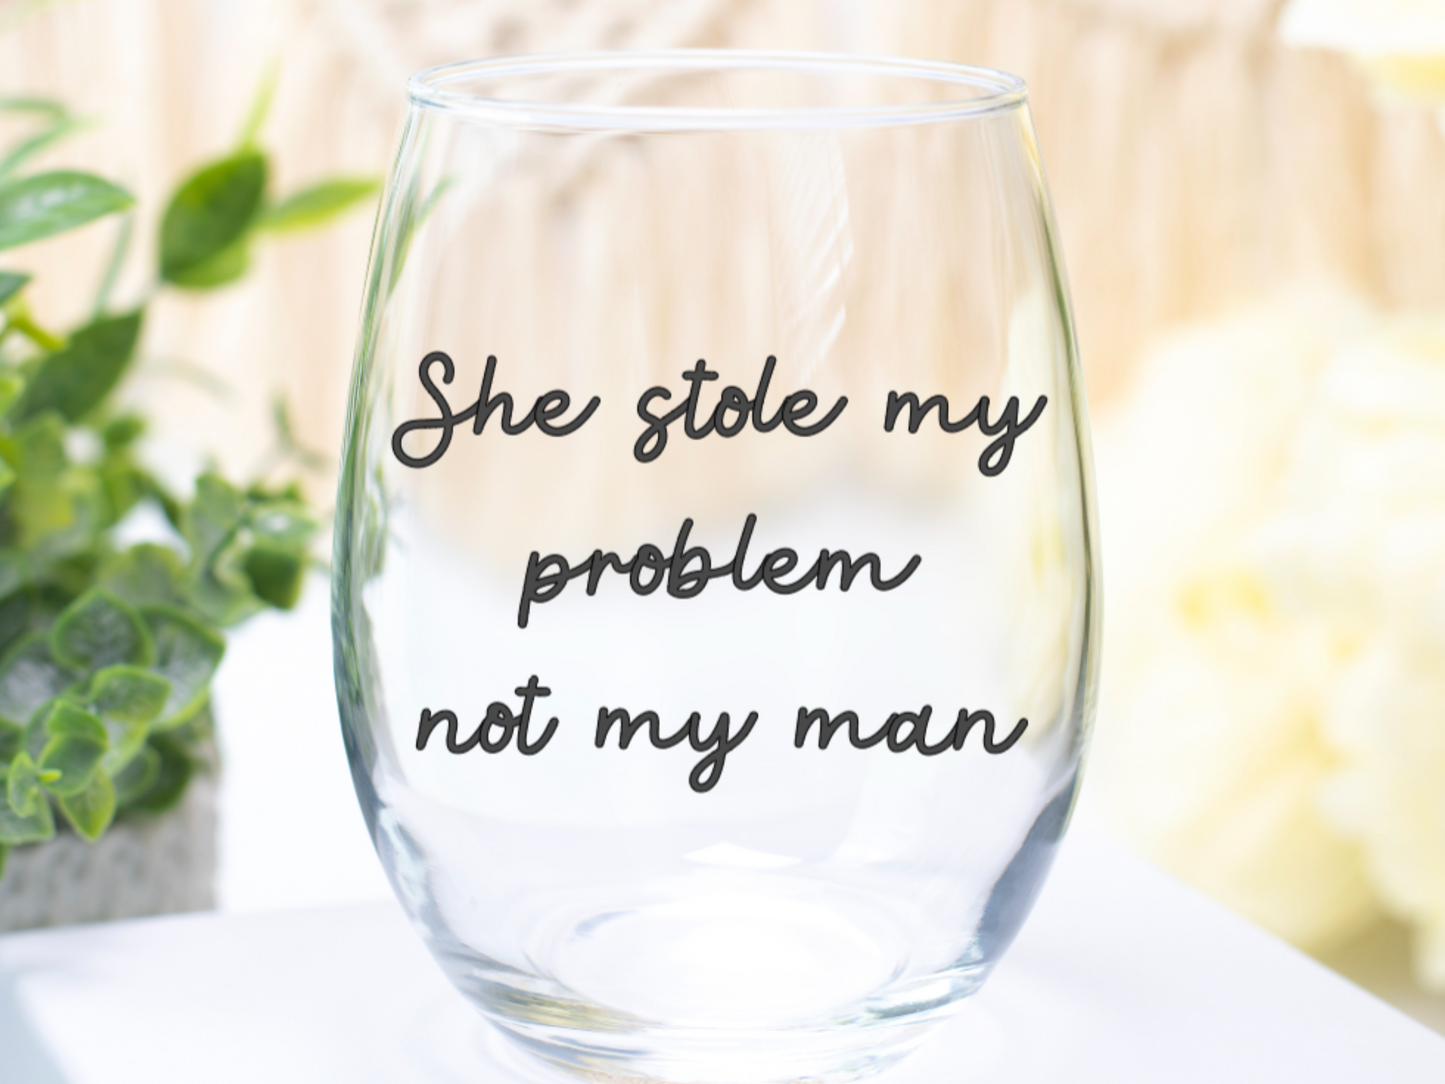 She Stole My Problem Not My Man Wine Glass (Version 1)